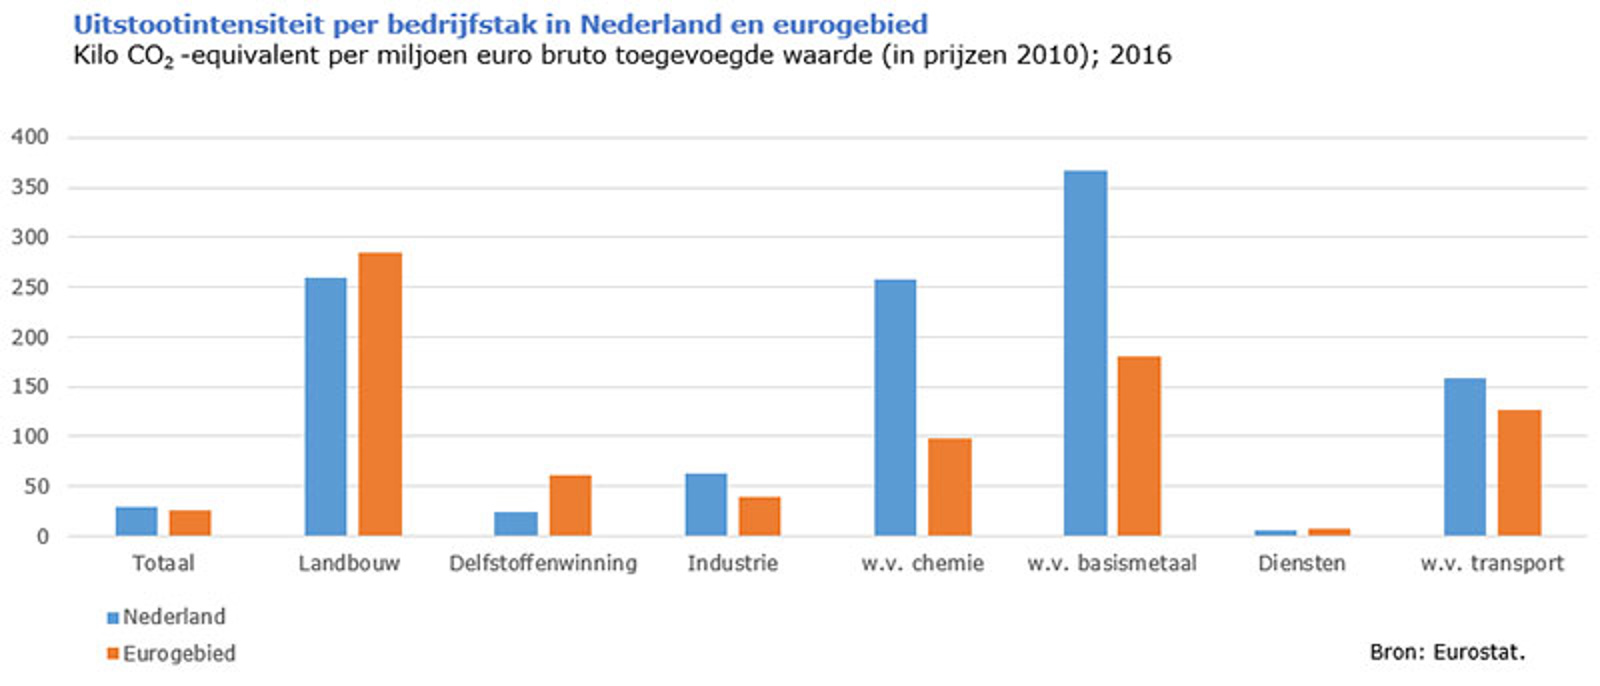 Uitstootintensiteit per bedrijfstak in Nederland en eurogebied